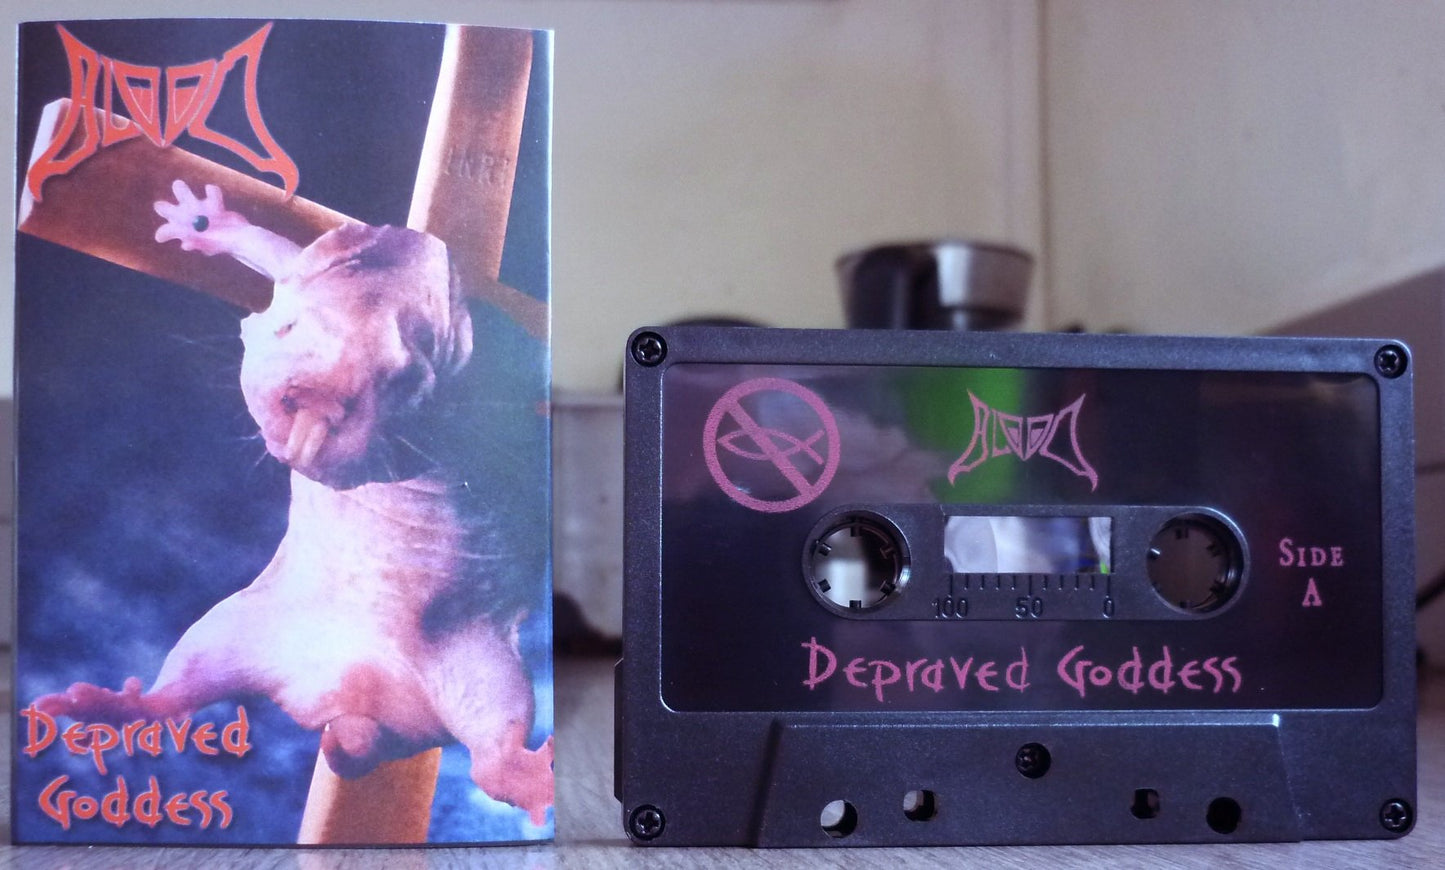 BLOOD "Depraved Goddess" Tape